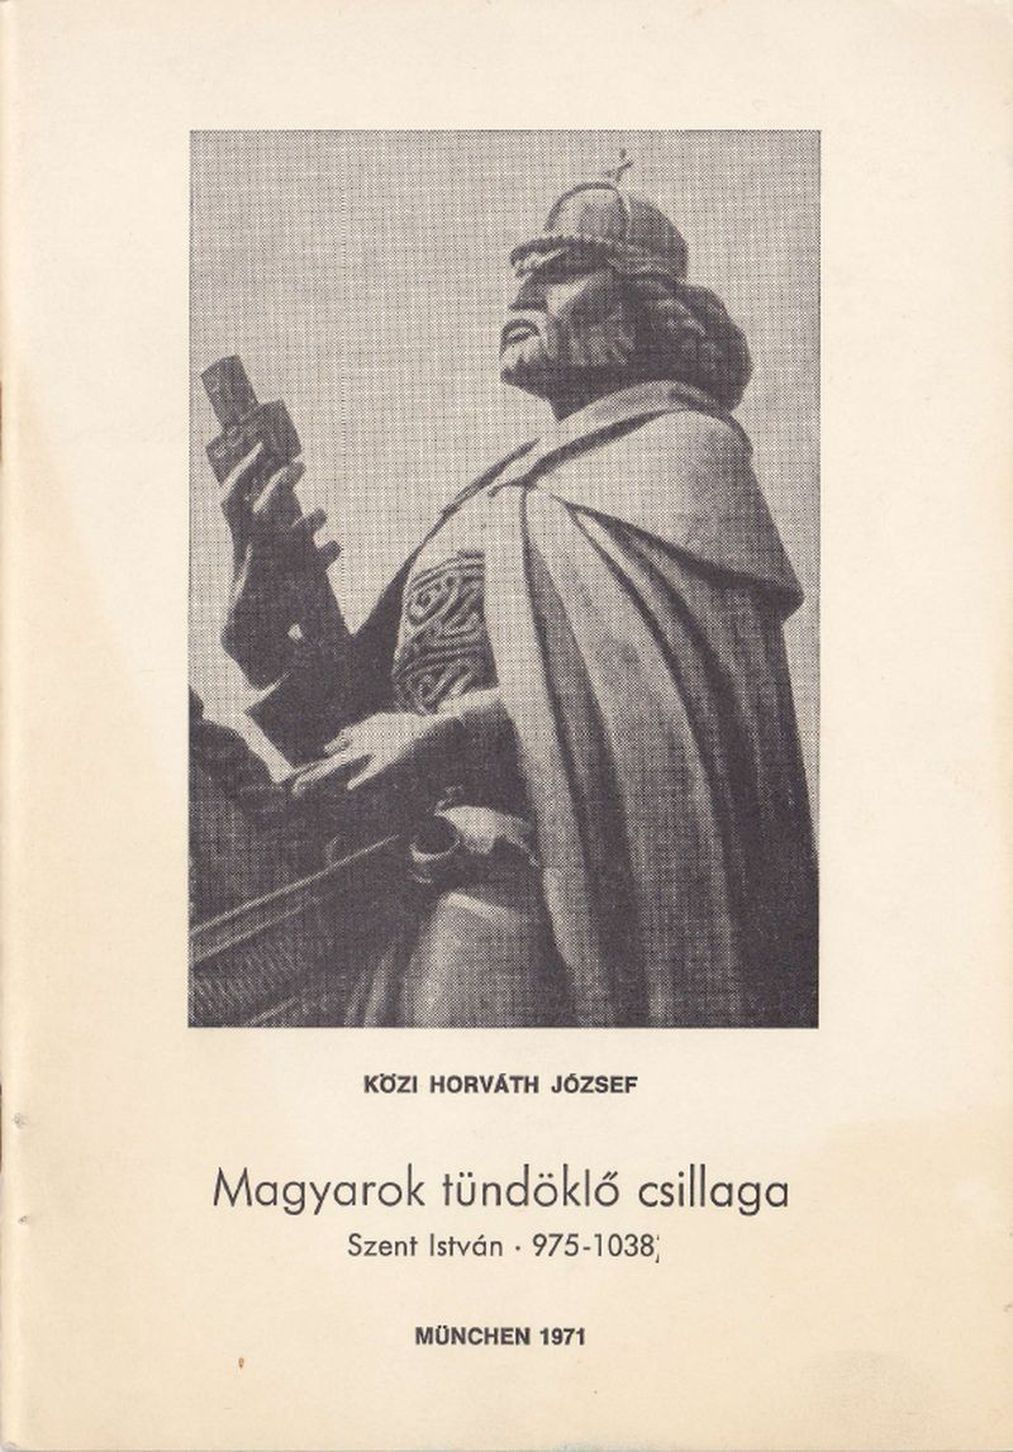 Magyarok tündöklő csillaga /Szent István 975-1038/ (1971)